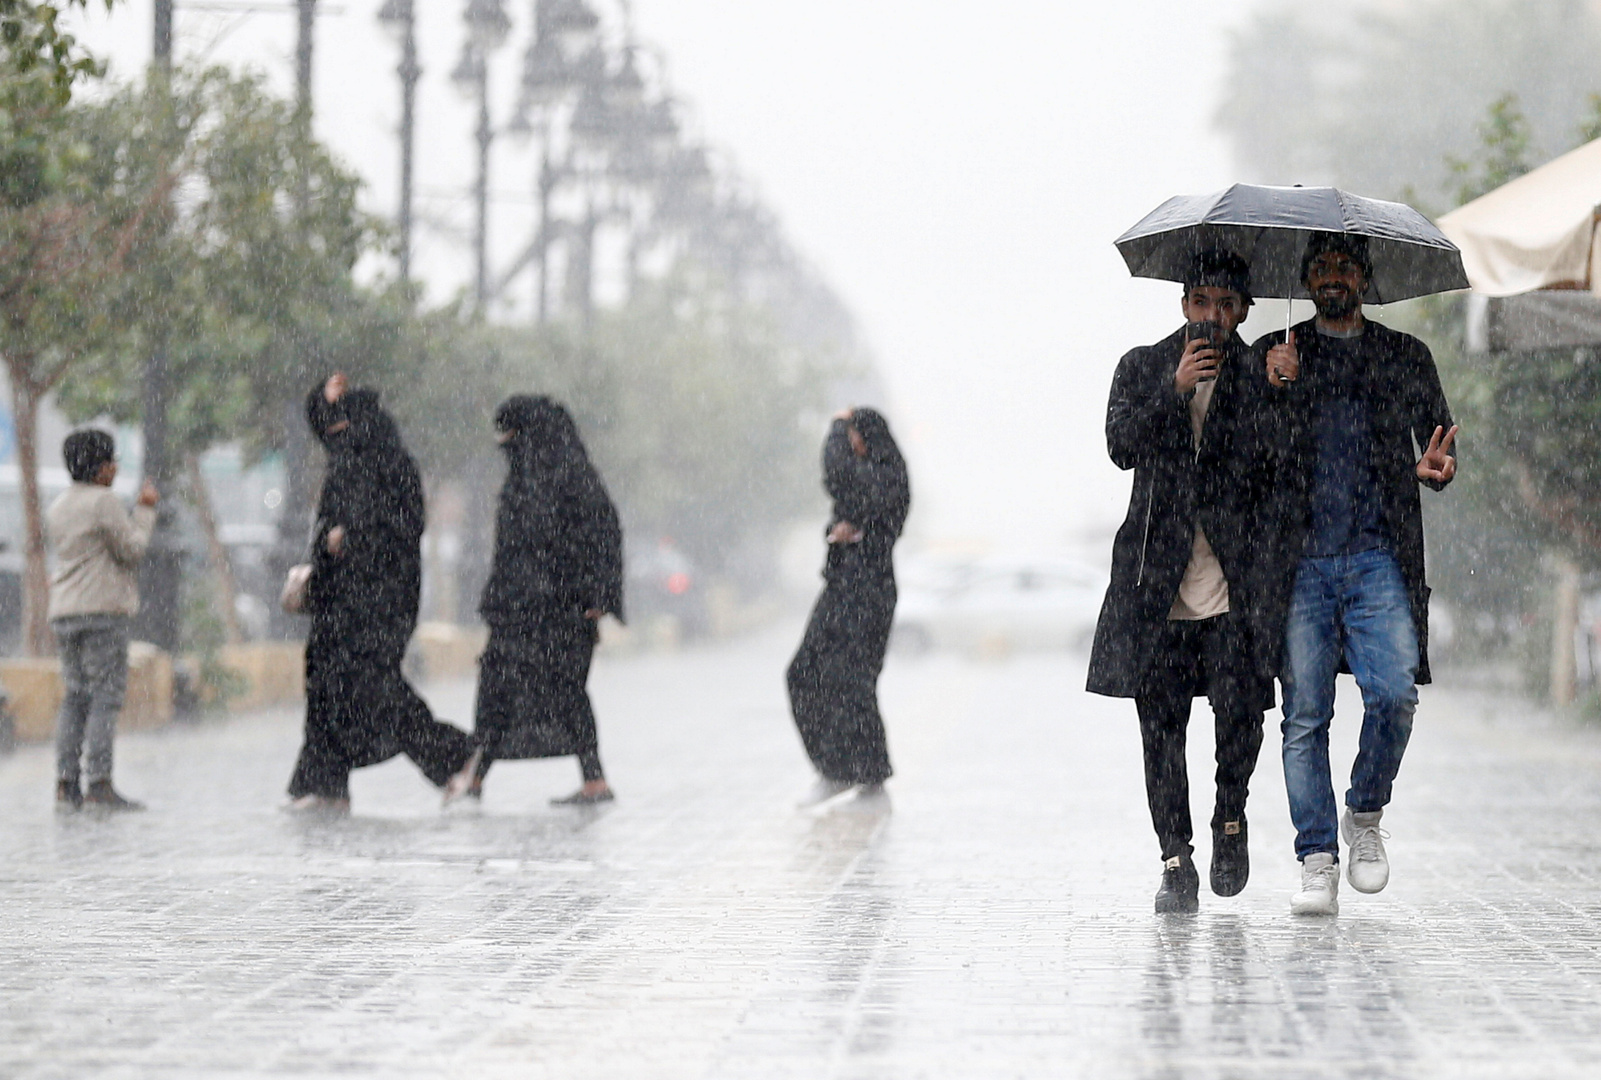 الأمطار الغزيرة في منطقة القصيم بالسعودية تحول الشوارع لبرك مائية (فيديو + صور)